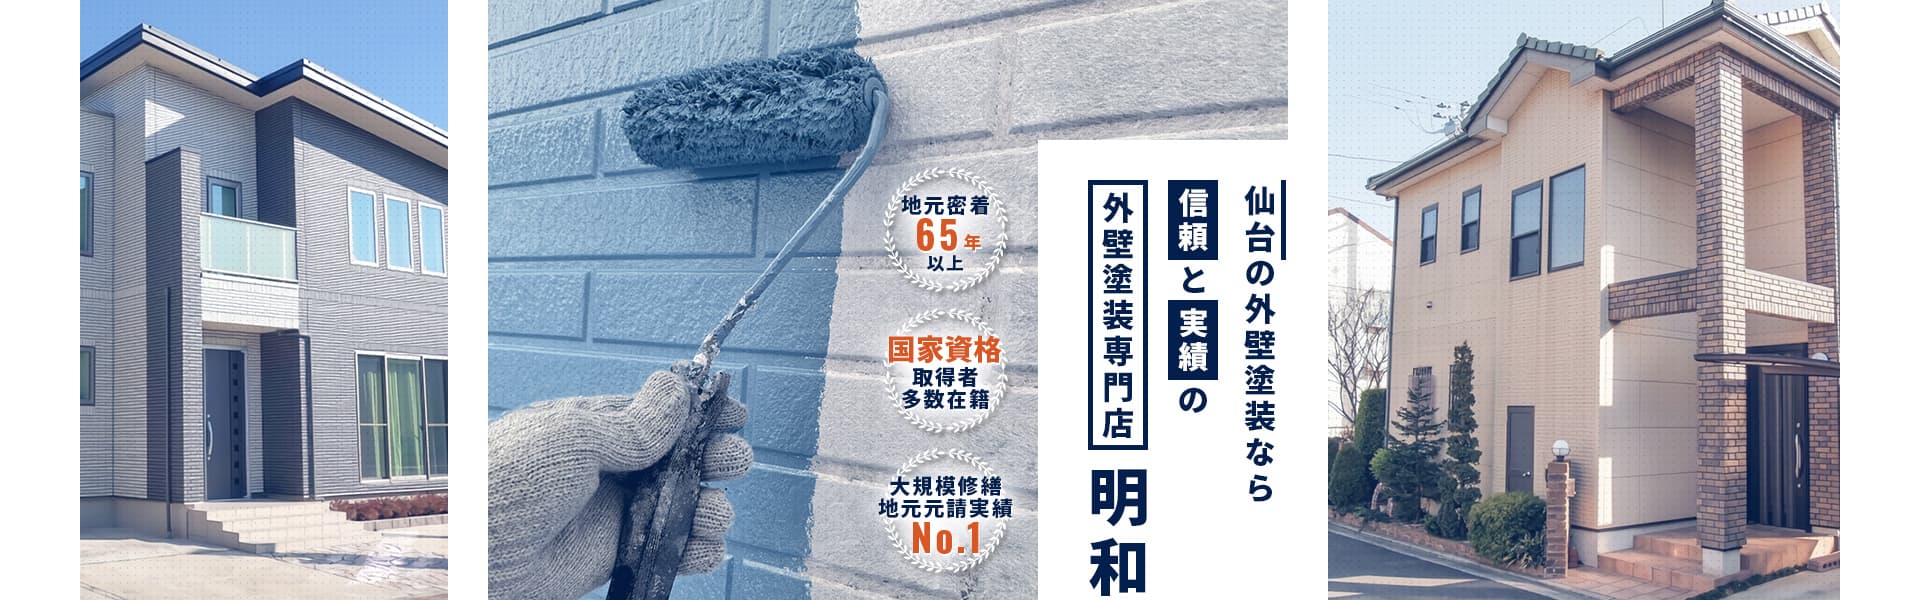 仙台の外壁塗装なら信頼と実績の外壁塗装専門店明和　地元密着65年以上、国家資格取得者多数在籍、大規模修繕実績No.1